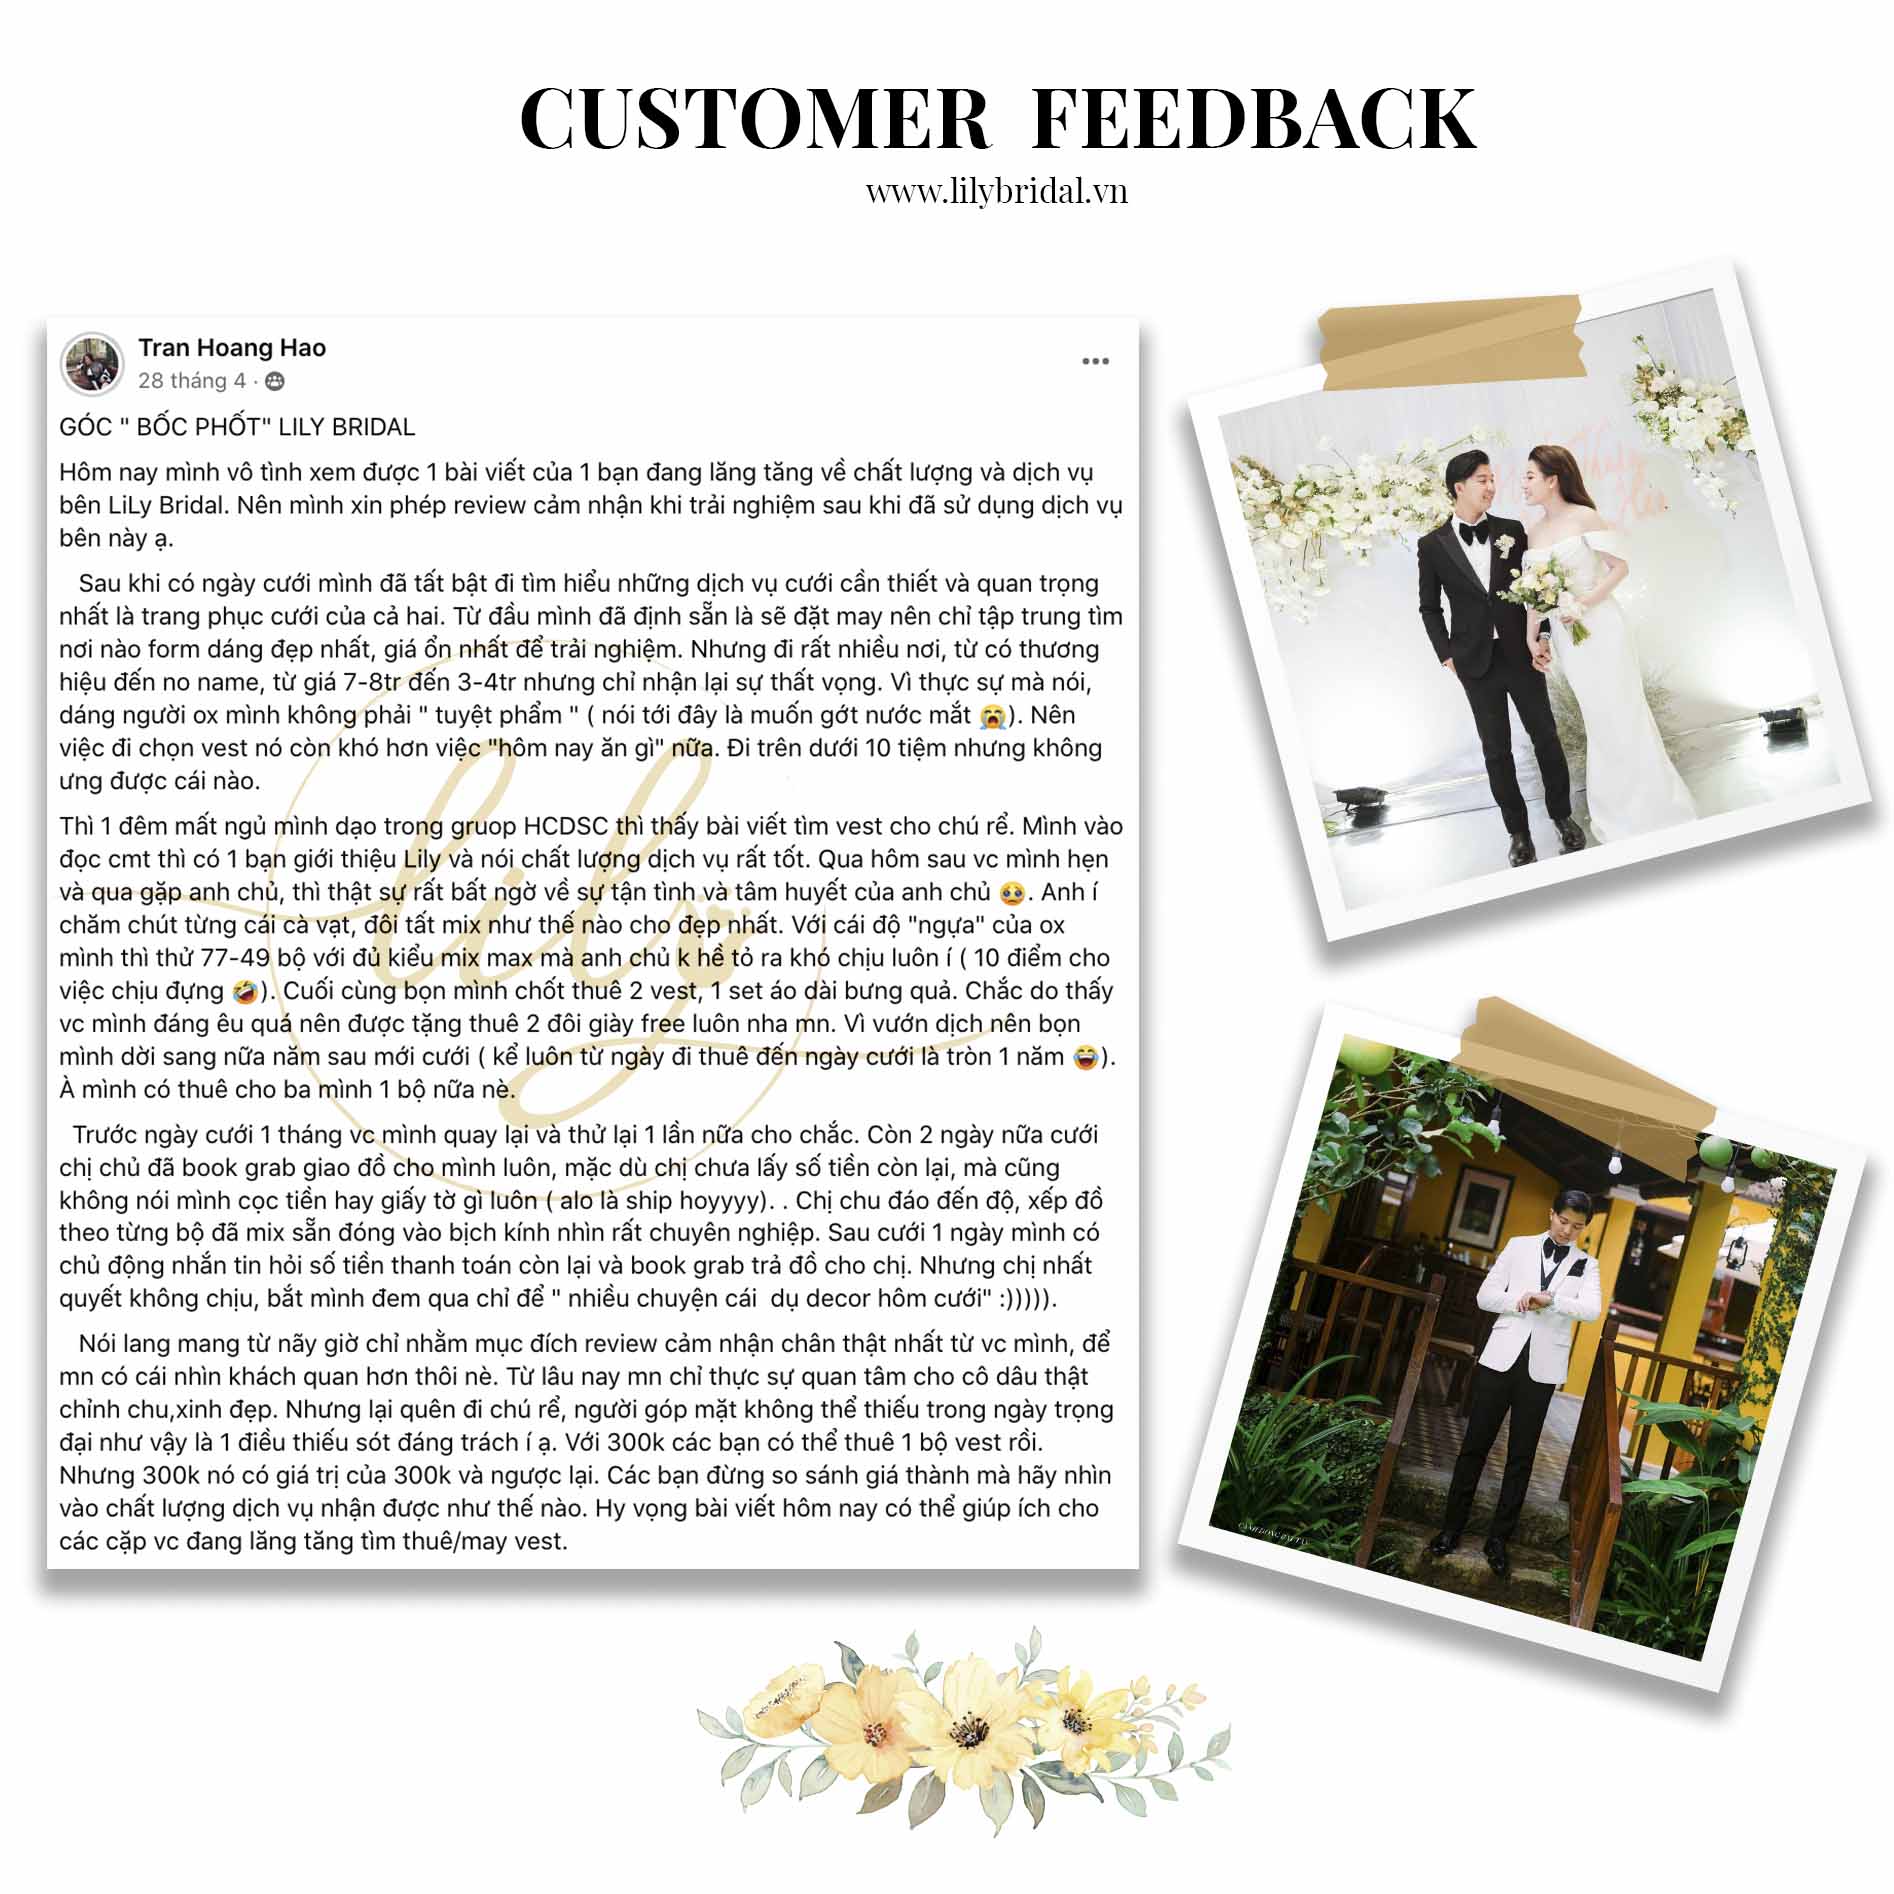 nội dung feedback khách hàng thuê vest cưới tại Lily